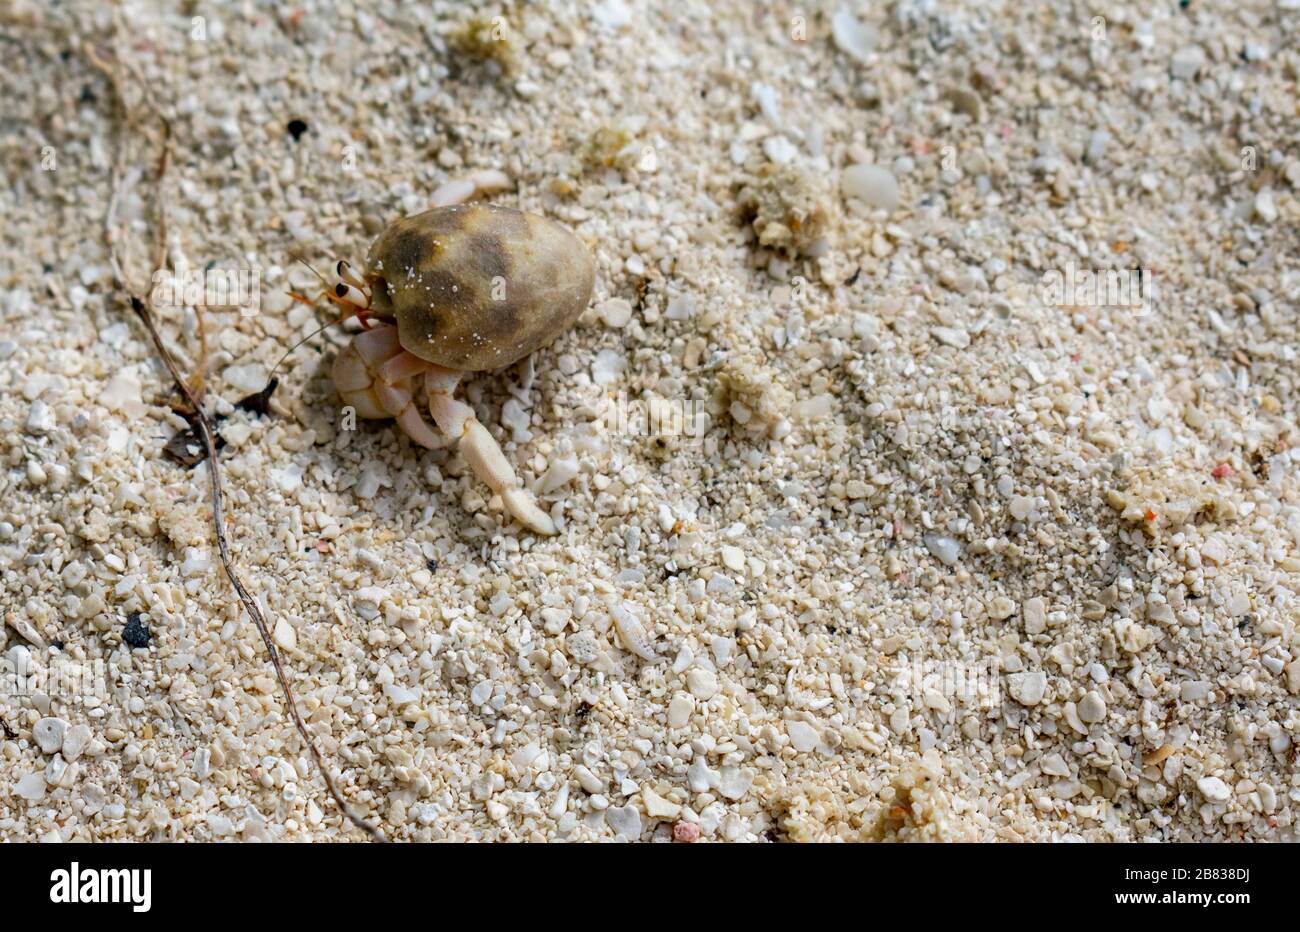 North Malé Atoll, Maldives - December 29 2019 - A small hermit crab on the Maldivian beach Stock Photo